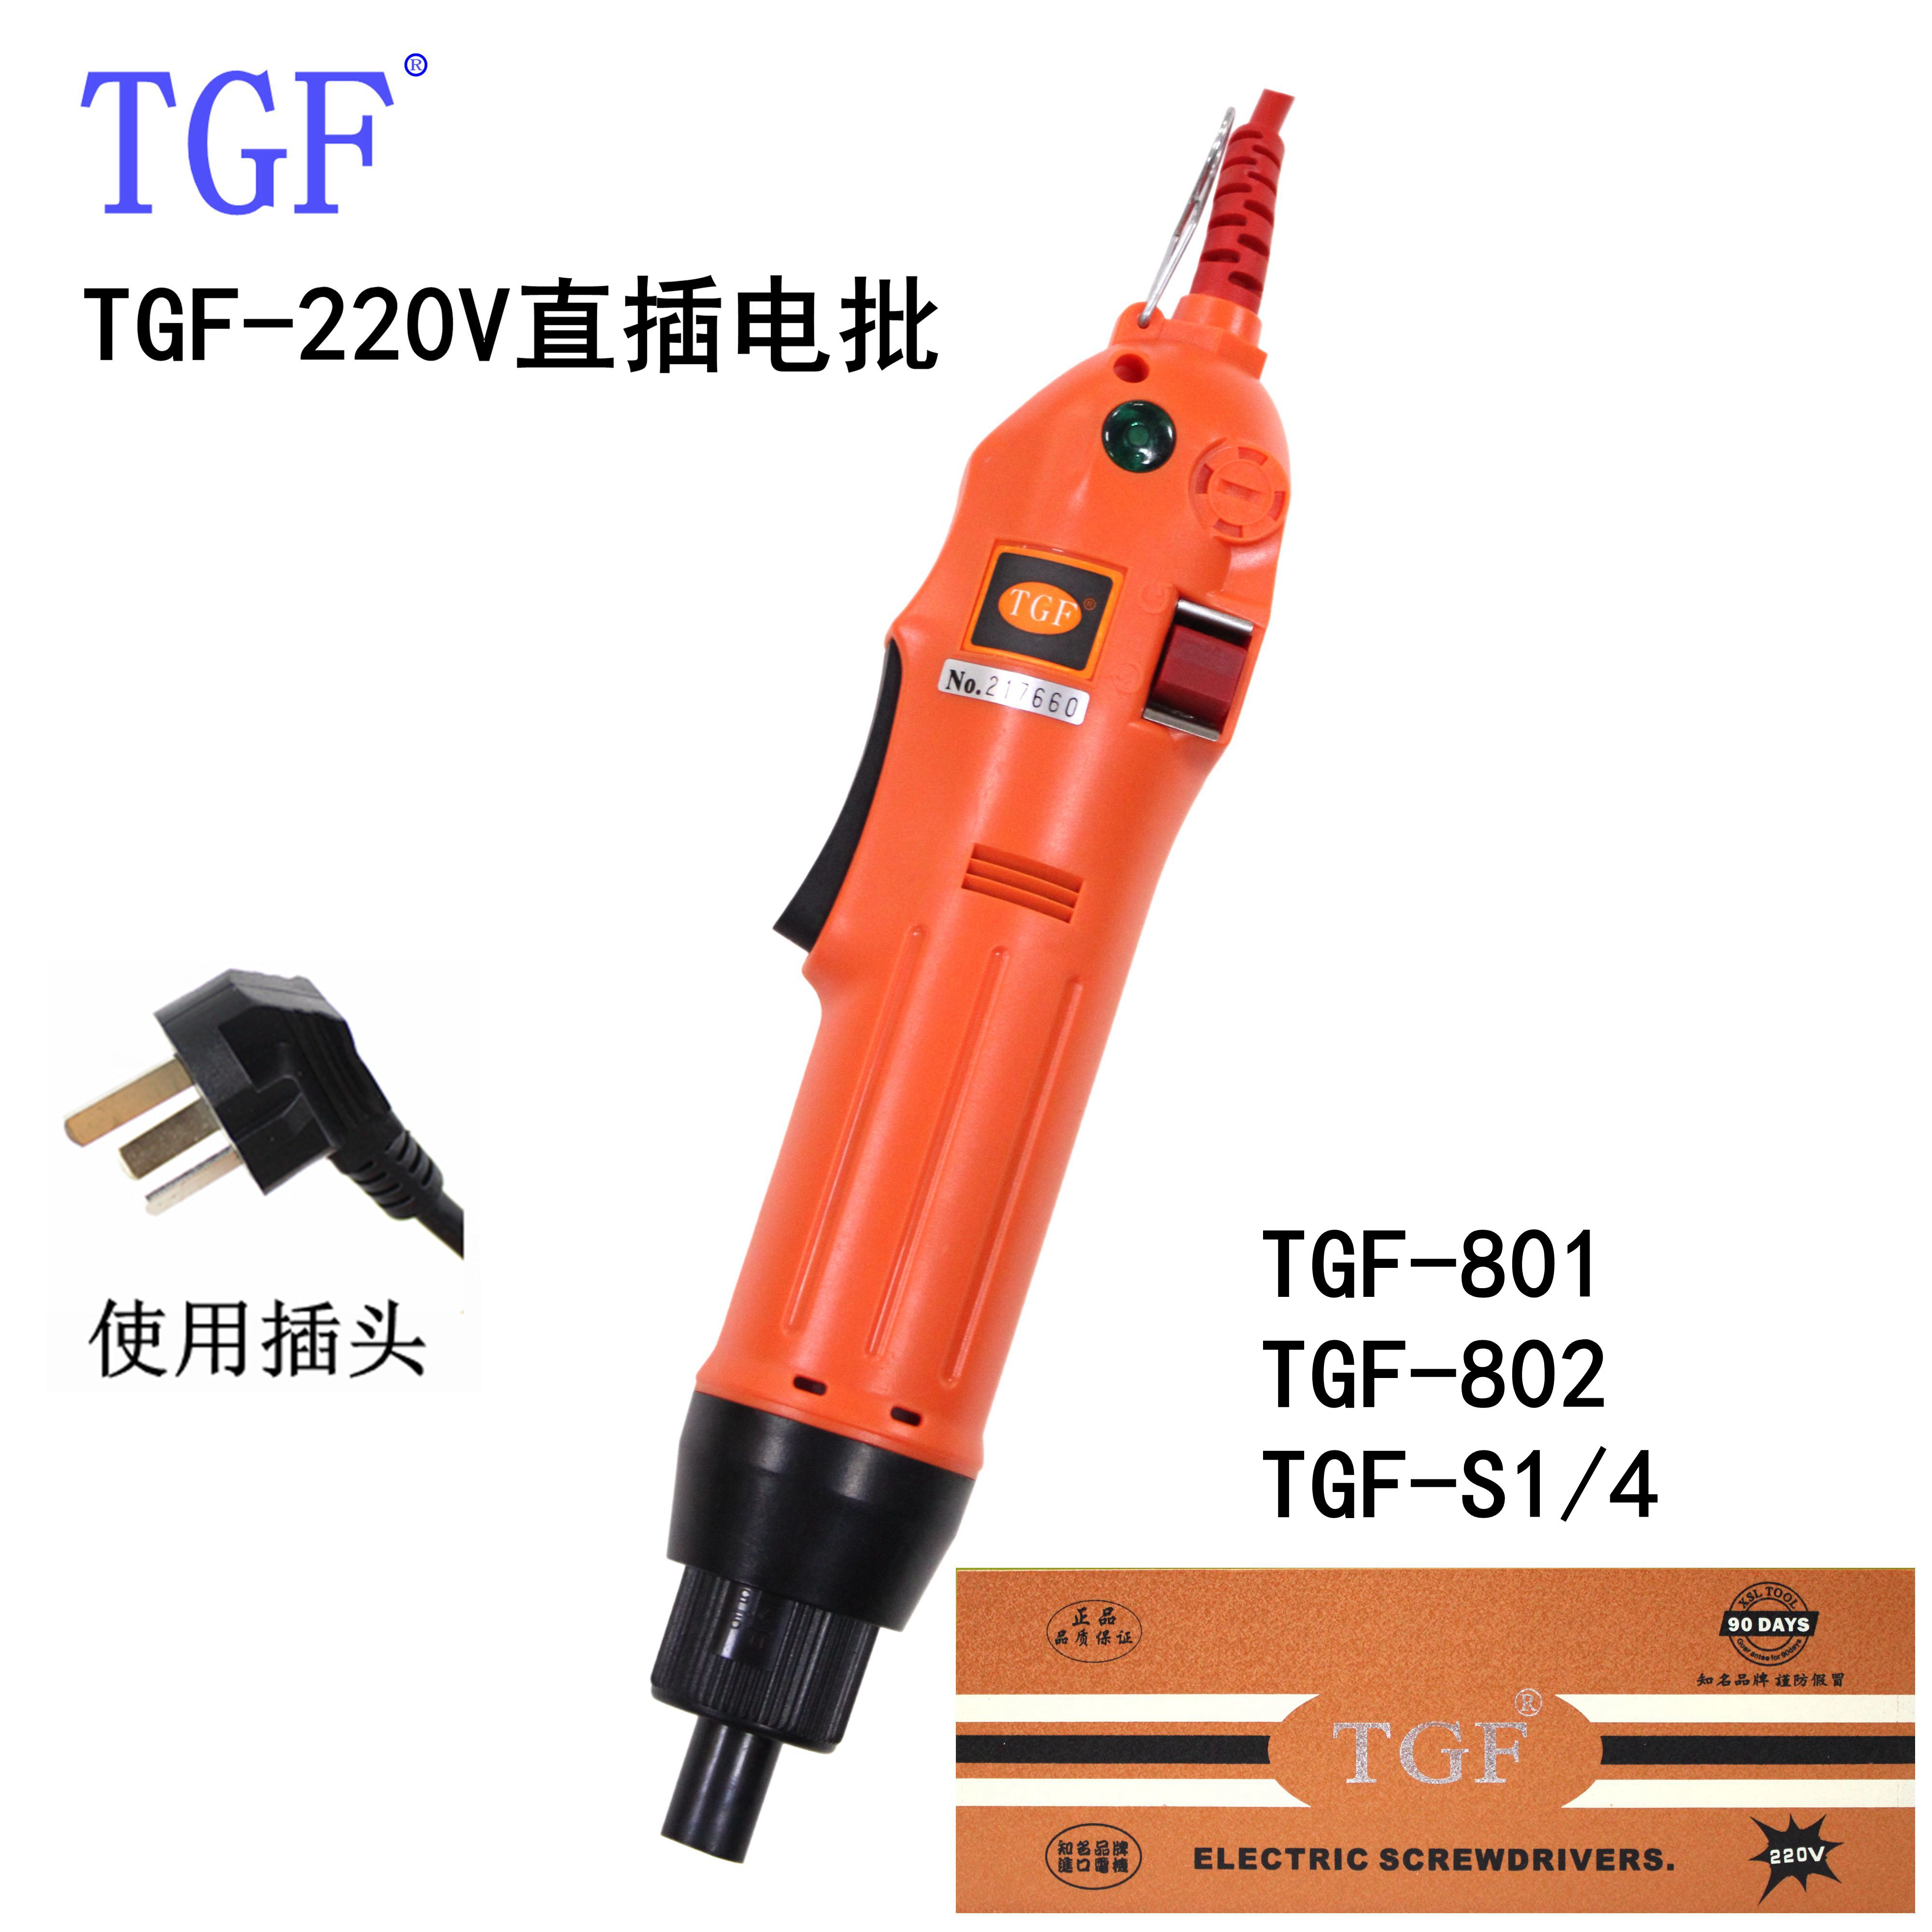 TGF-220V直插电批 电动螺丝刀电动改锥螺丝刀电动起子电批